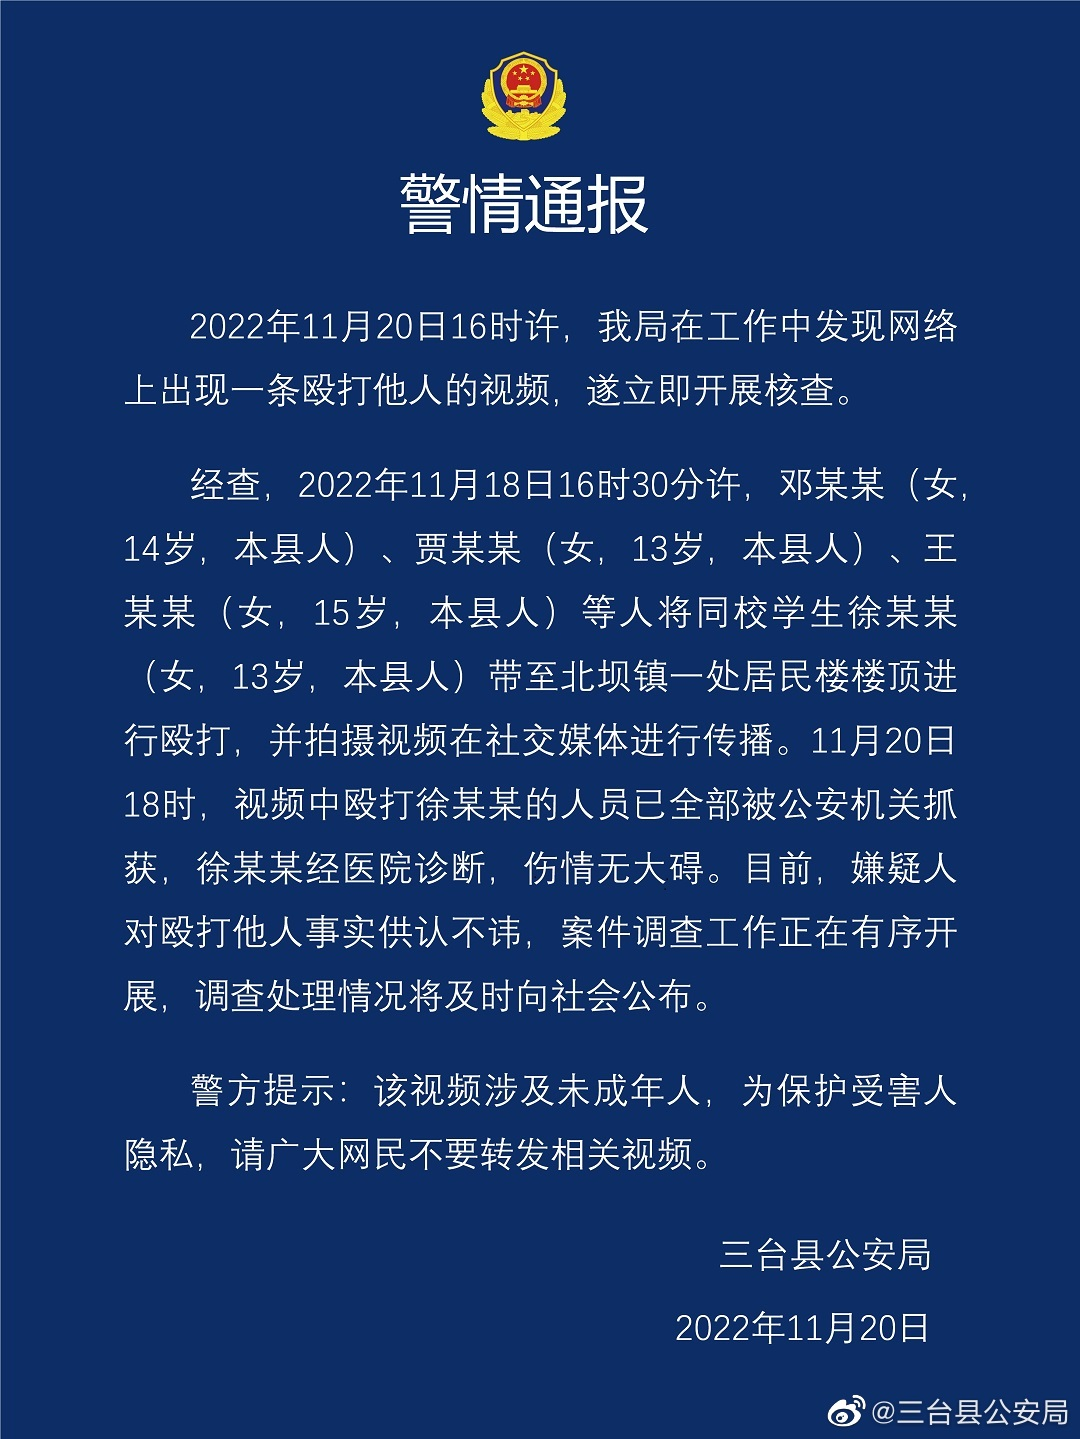 三台县公安局第一次在微博11月20日晚上2238分钟发出的一则《警情通报》。.png